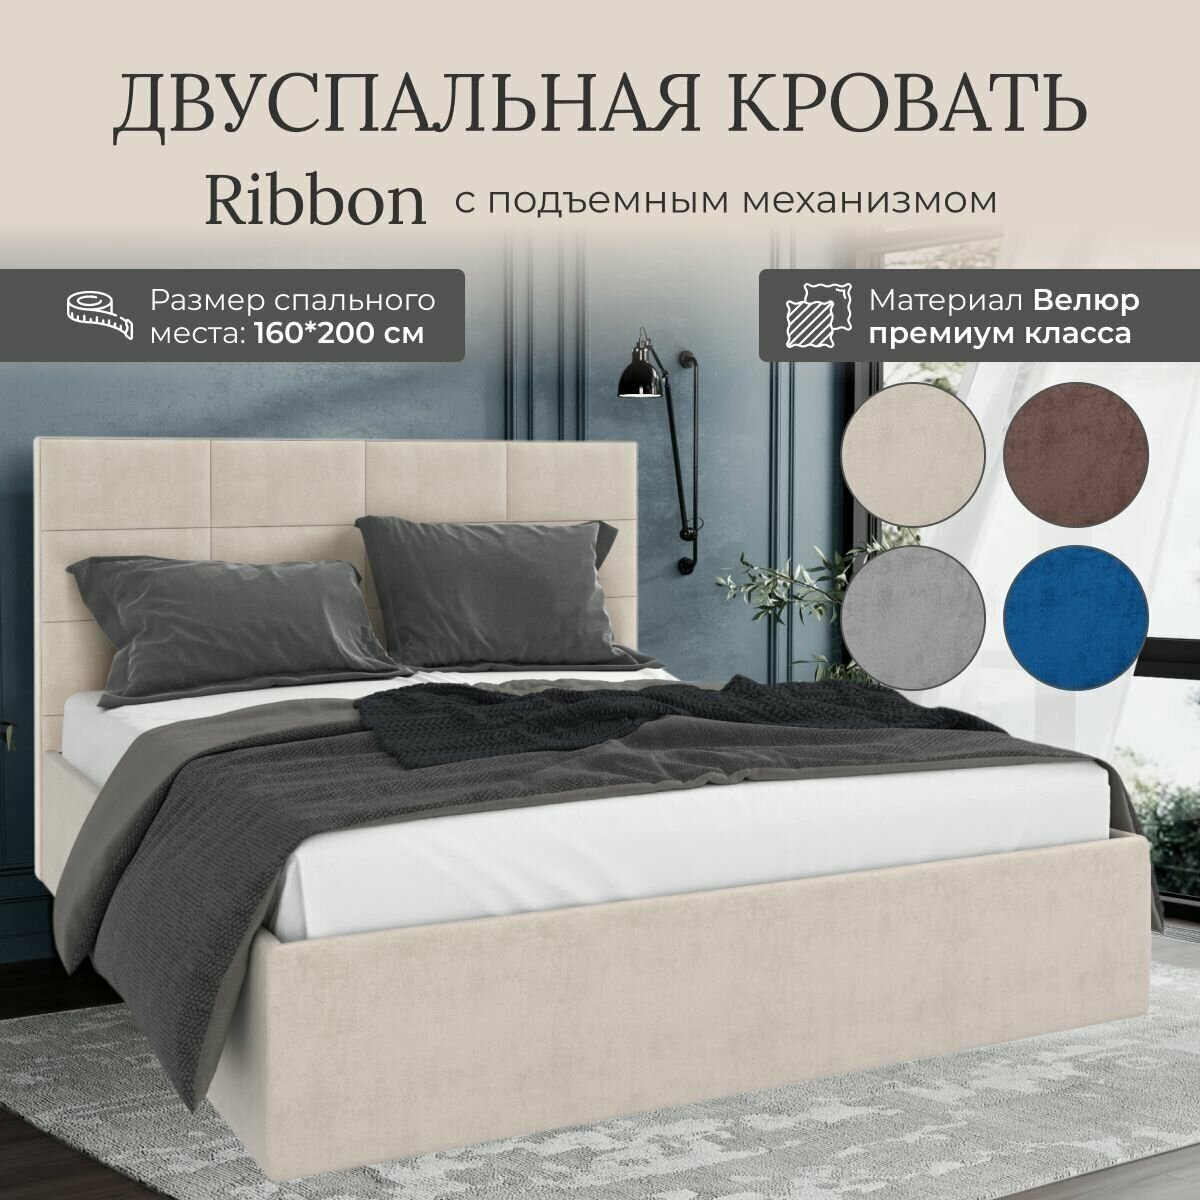 Кровать с подъемным механизмом Luxson Ribbon двуспальная размер 160х200